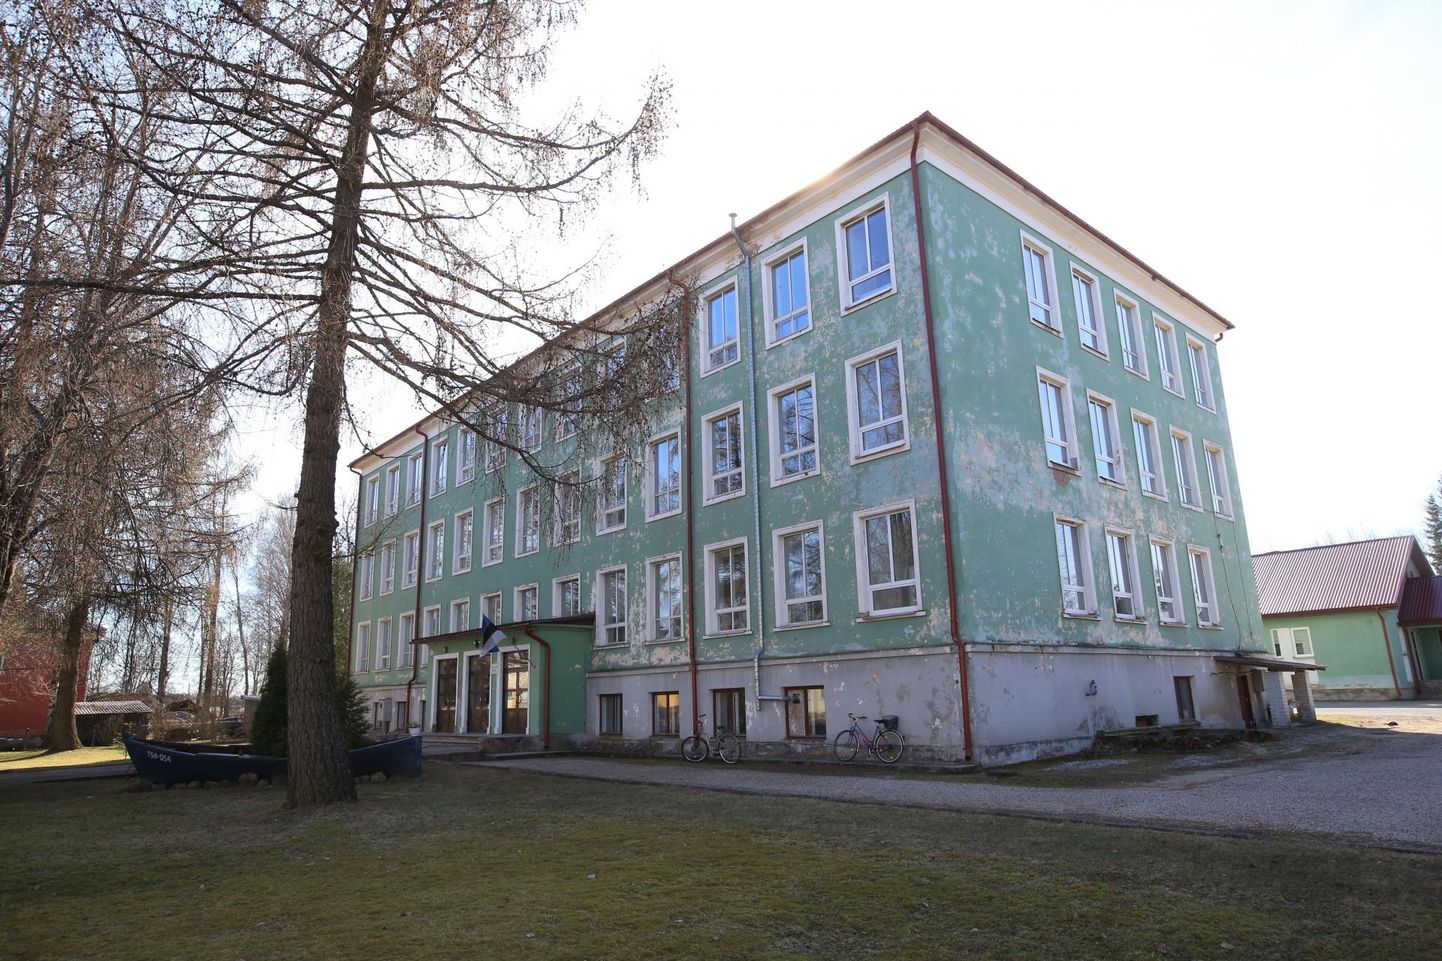 Kallaste kooli õpilaste vanemad tahaksid, et Kolkja õpilased nende kooli tuleksid.